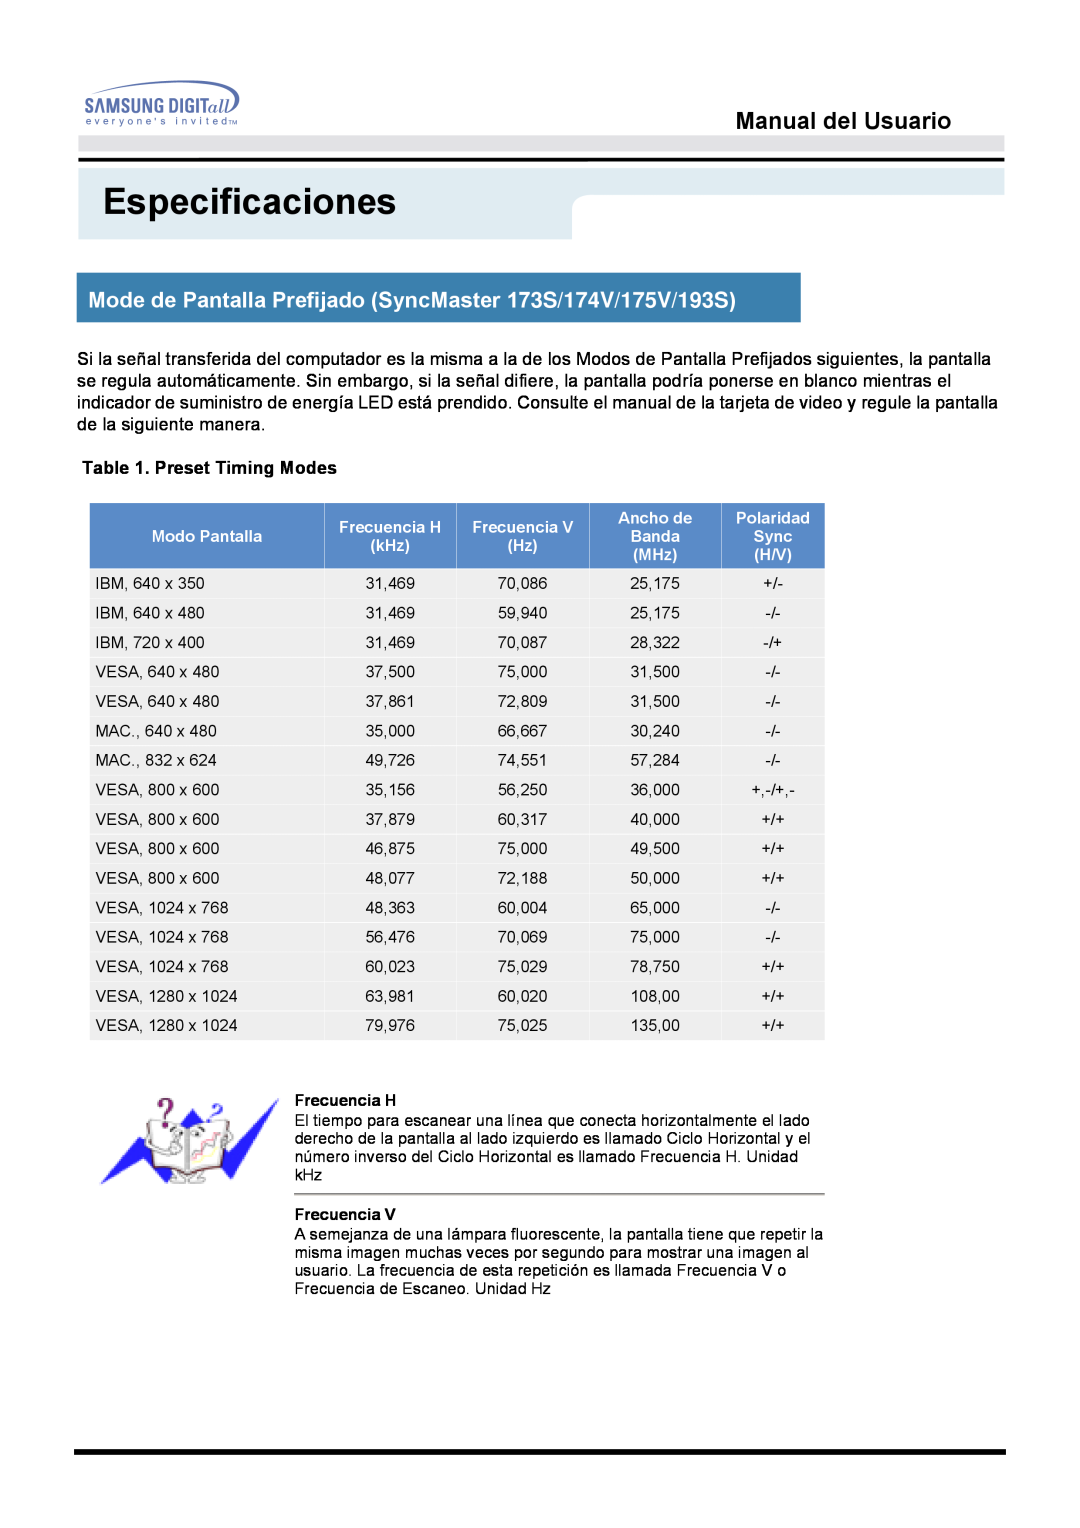 Samsung 153S manual Especificaciones, Manual del Usuario, Preset Timing Modes, Frecuencia H 